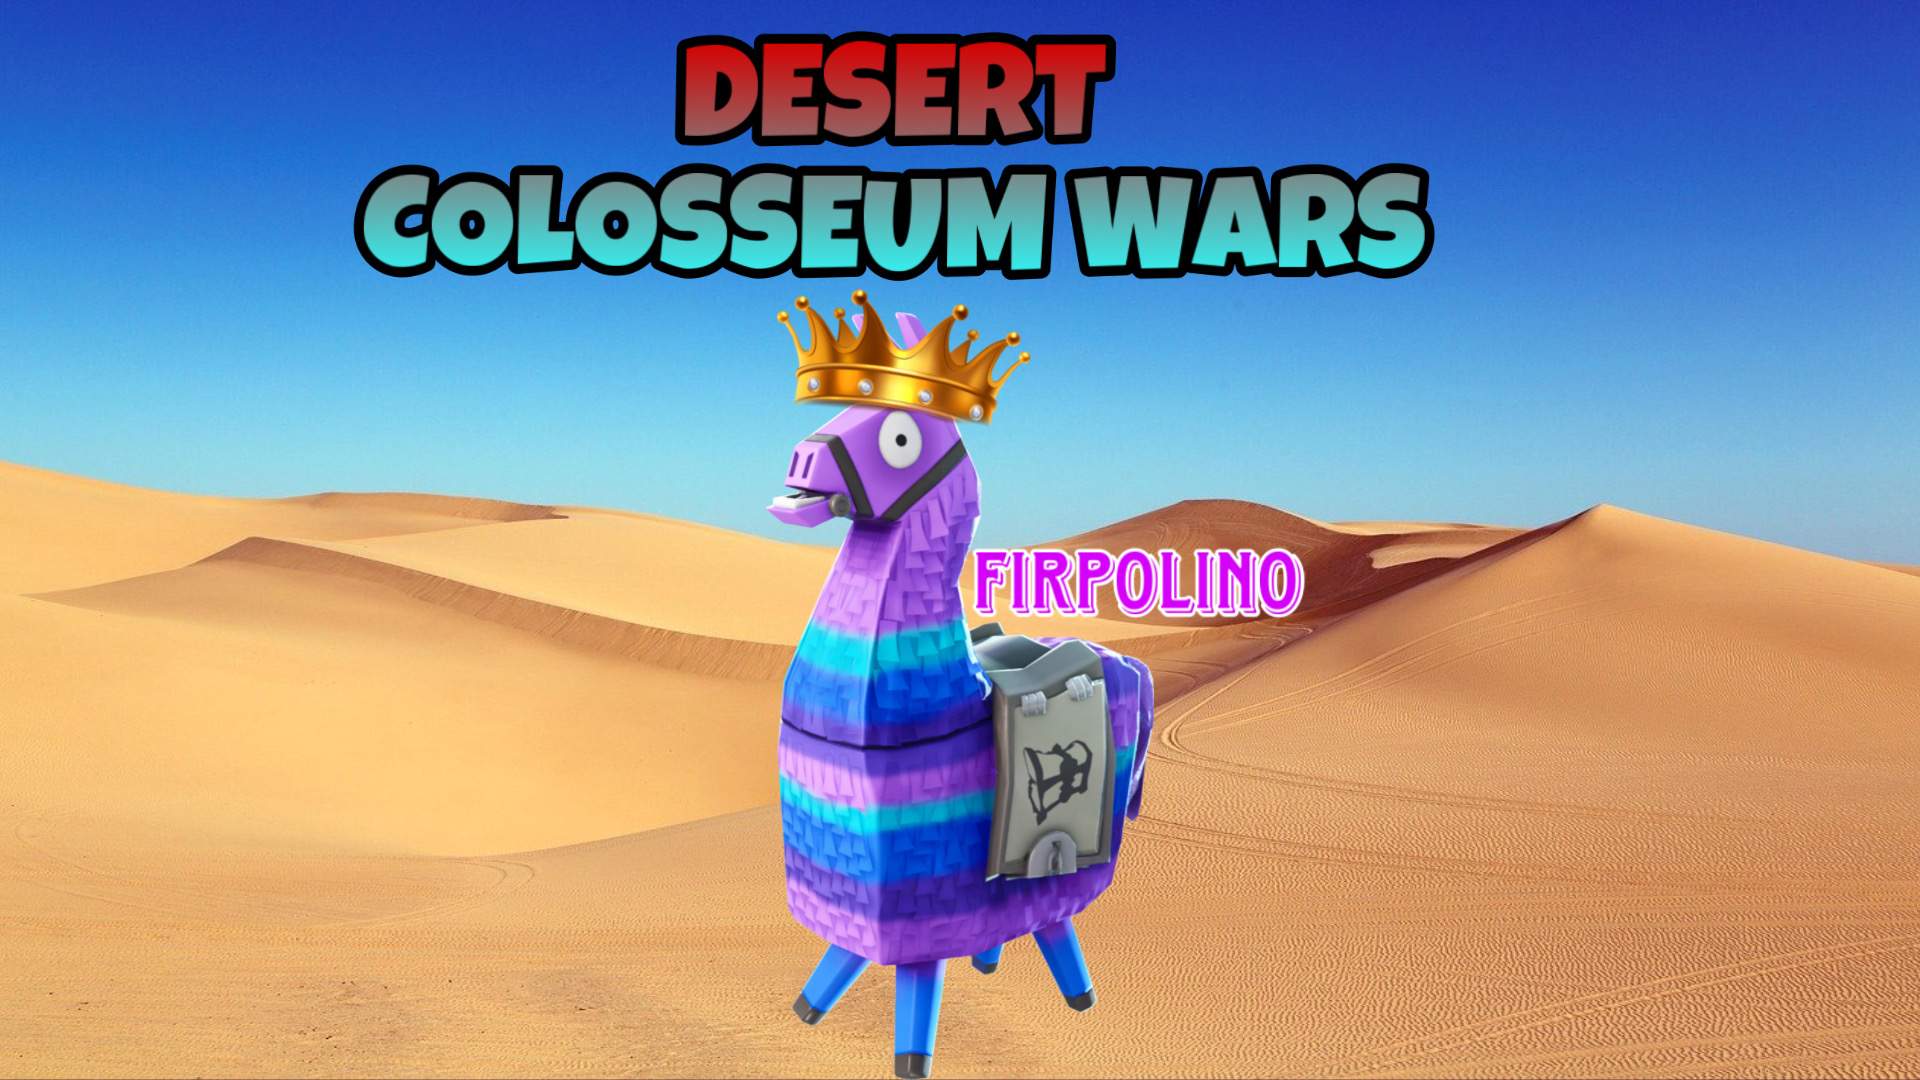 DESERT COLOSSEUM WARS